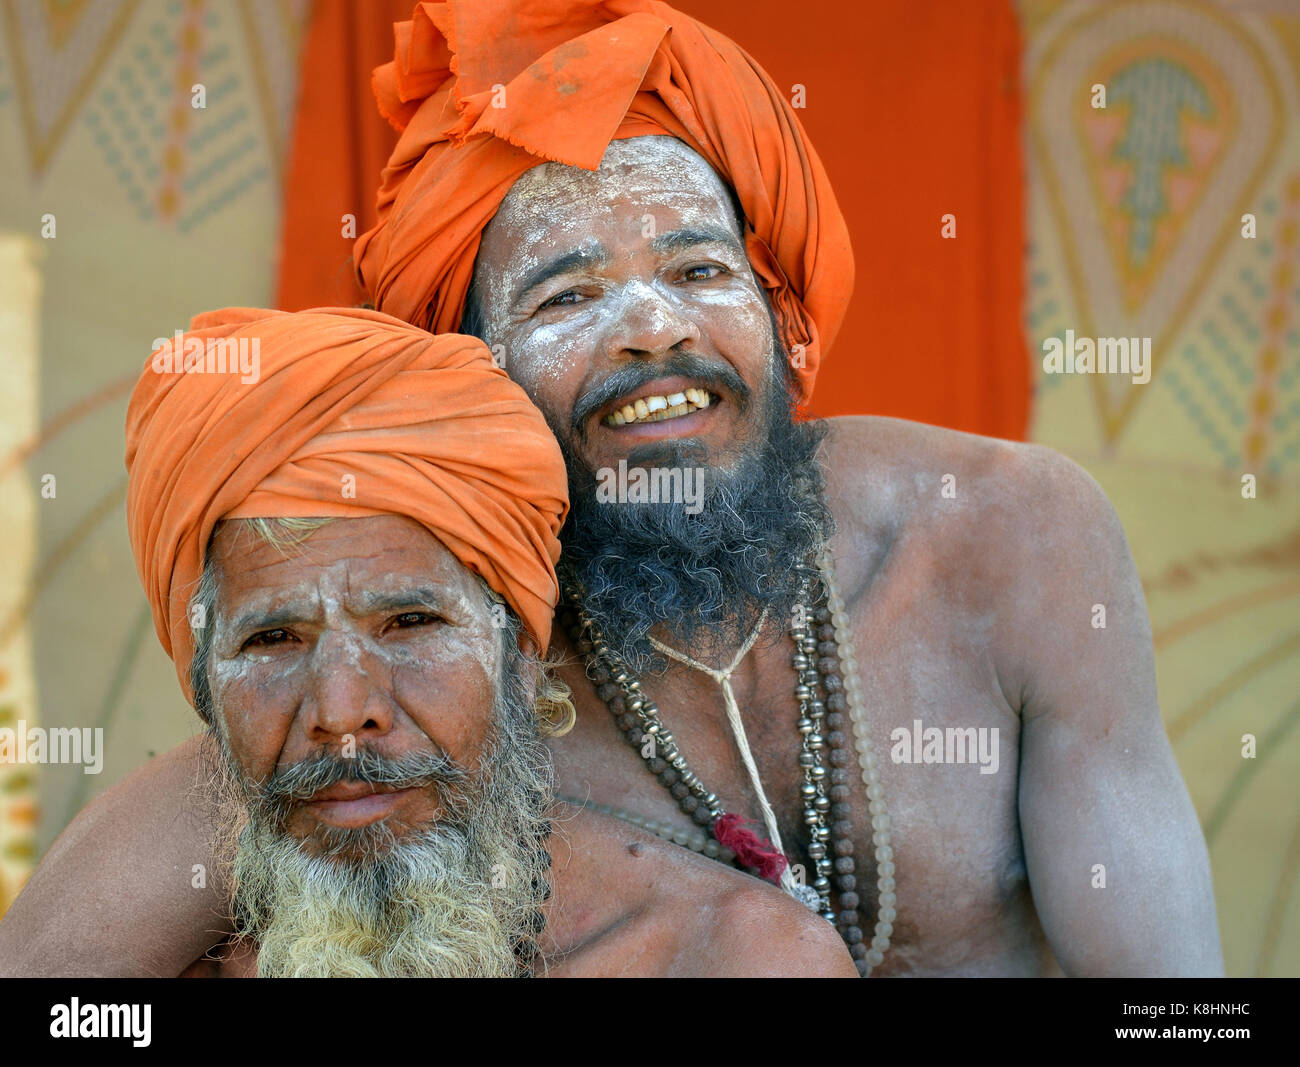 Deux sadhus hindous indiens heureux avec des turbans orange et blanc frêne sacré sur leurs visages, les barbes et les corps, serrant l'autre dans une étreinte étroite Banque D'Images